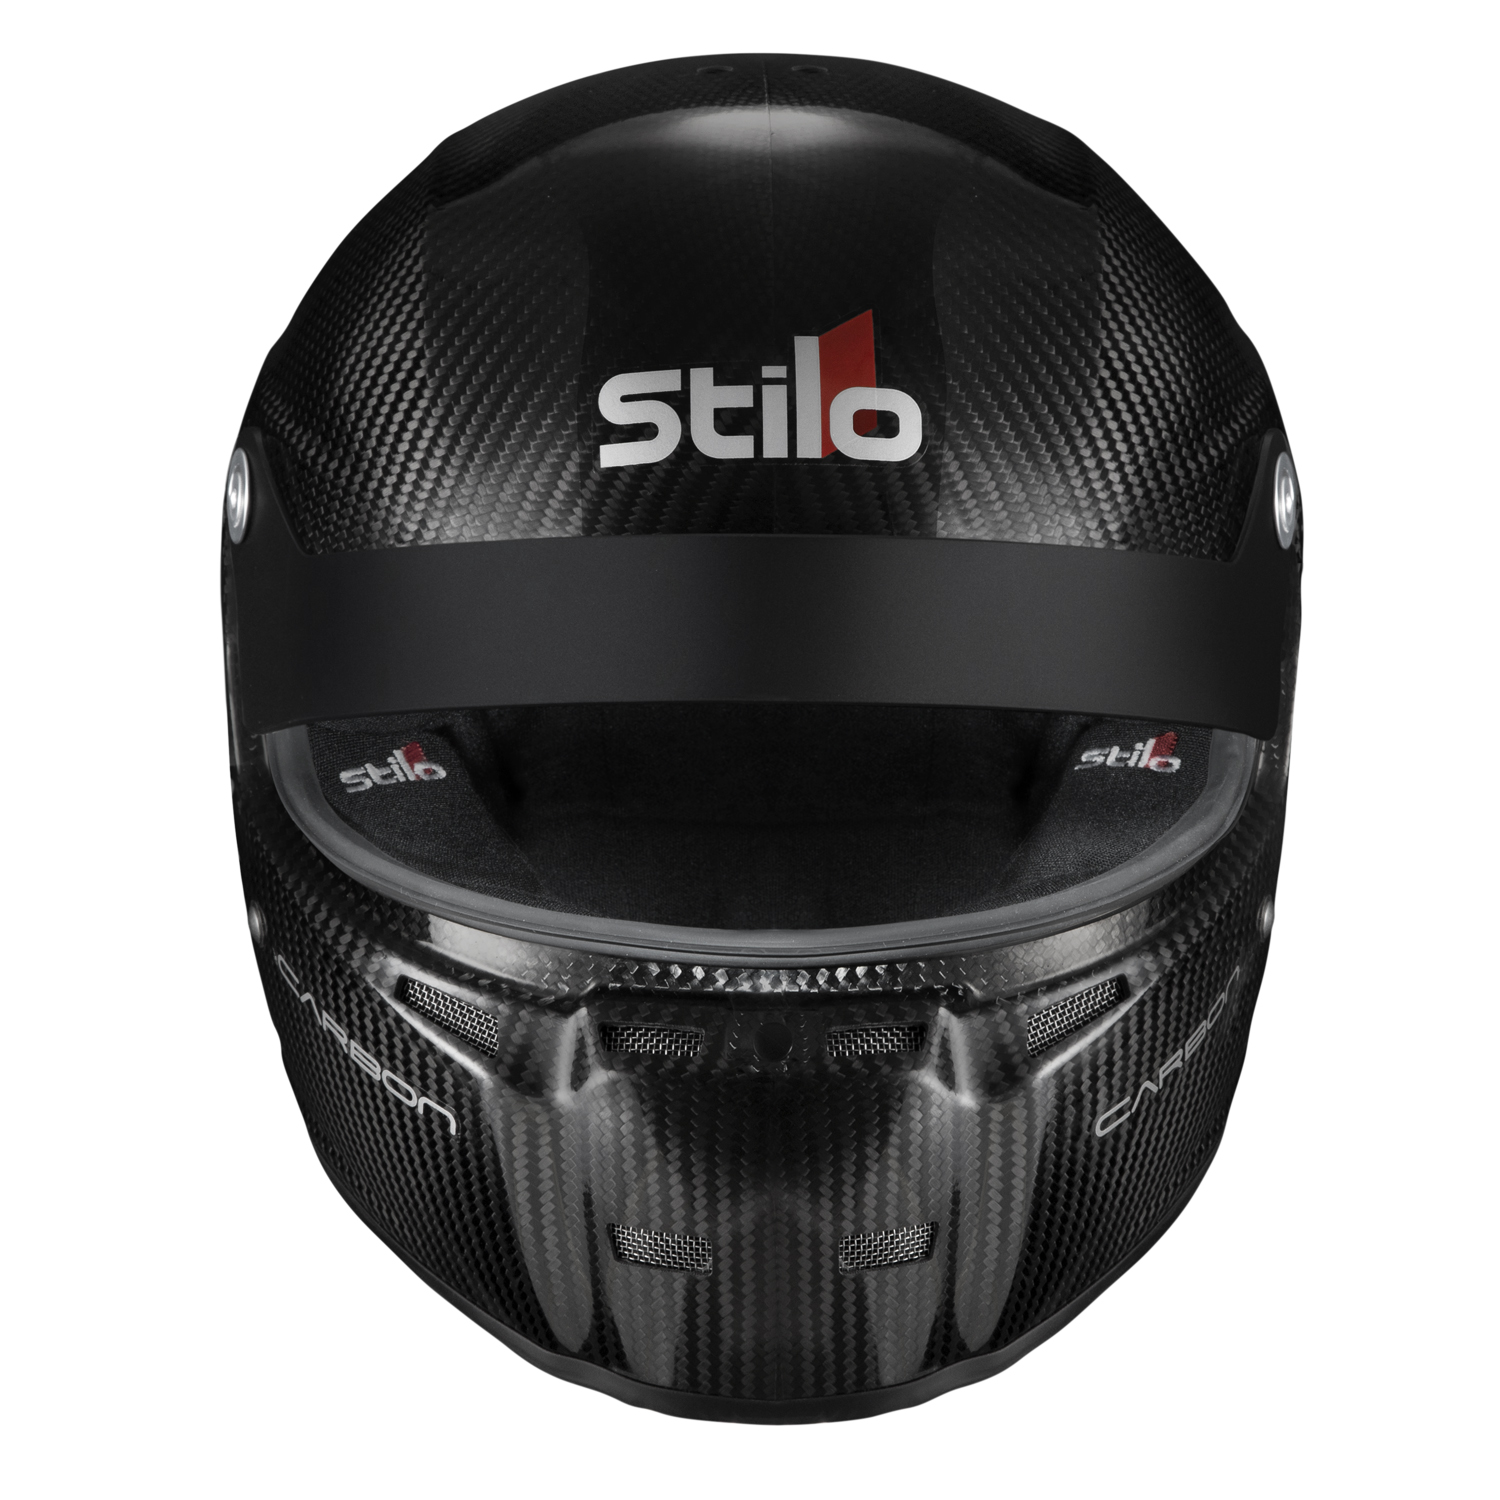 Aerografia personalizzata • Cri Helmet Shop